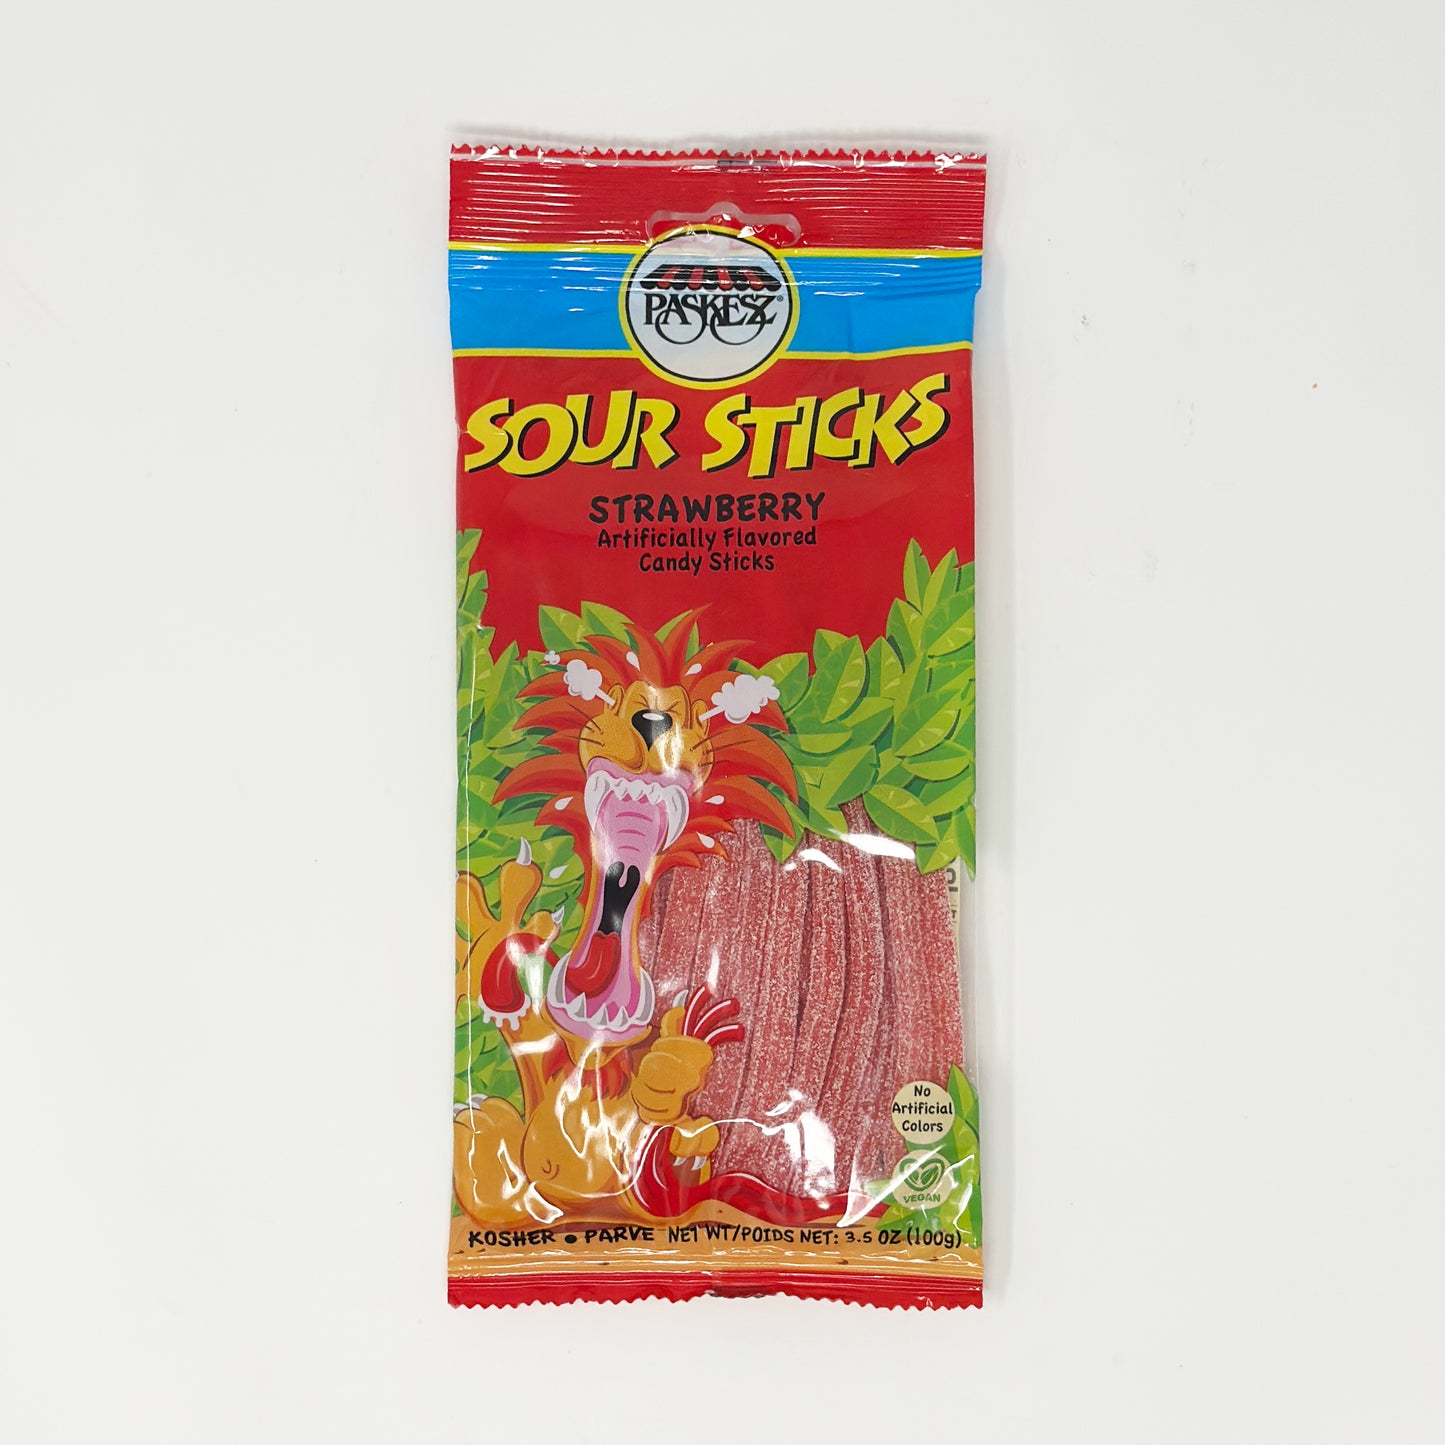 Paskesz Sour Sticks Strawberry 3.5 oz